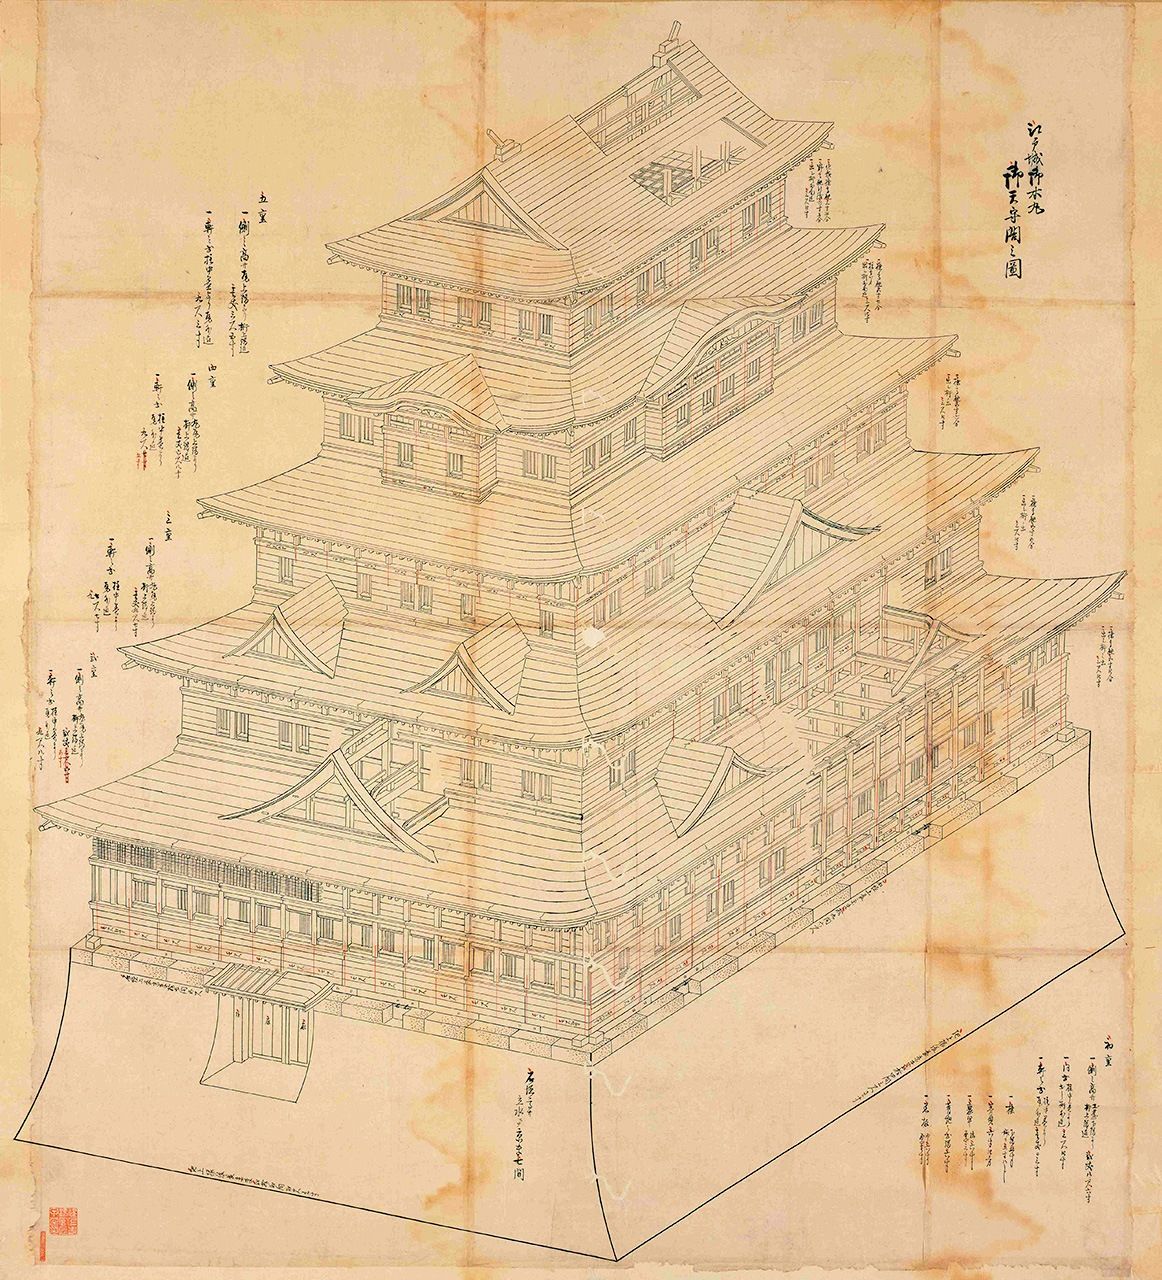 Edo-jō Gohonmaru Gotenshukaku Tatekata-no-zu (Planos del torreón y las edificaciones del castillo de Edo ilustra el torreón completado en 1638 del tercer shōgun, Iemitsu. (Archivos de la Biblioteca Metropolitana Central de Tokio)